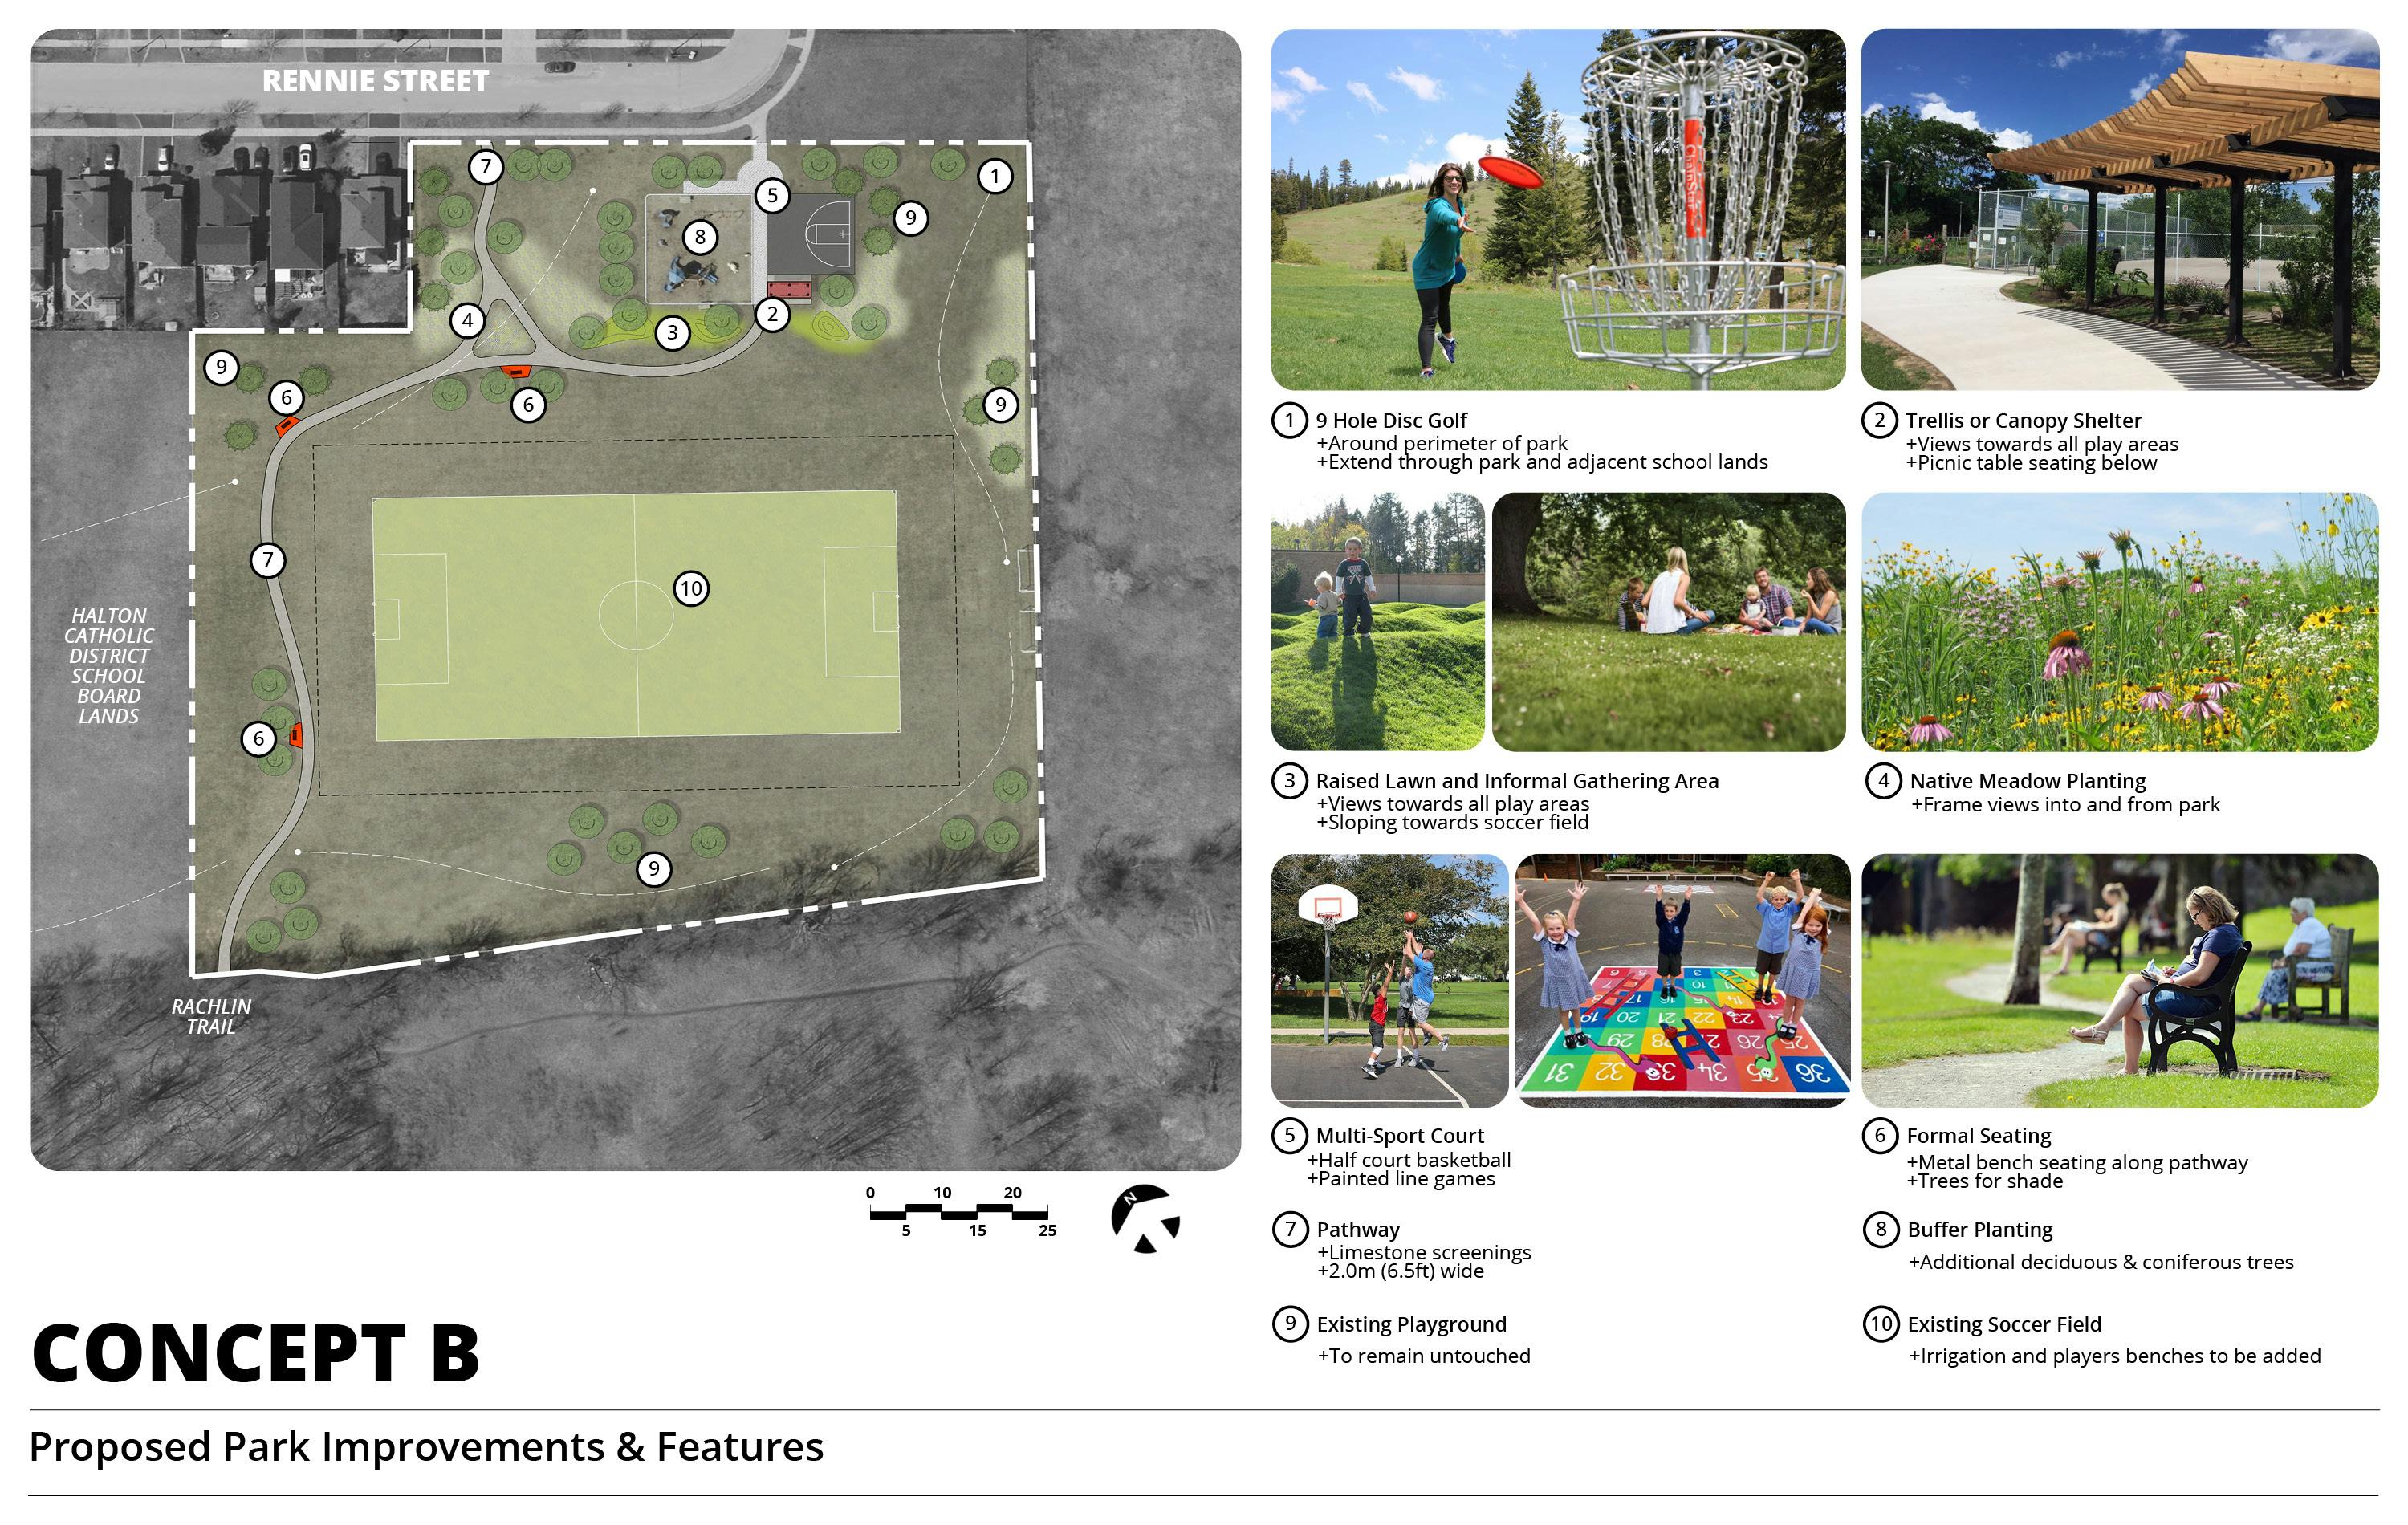 Concept B - Proposed Park Improvements & Features